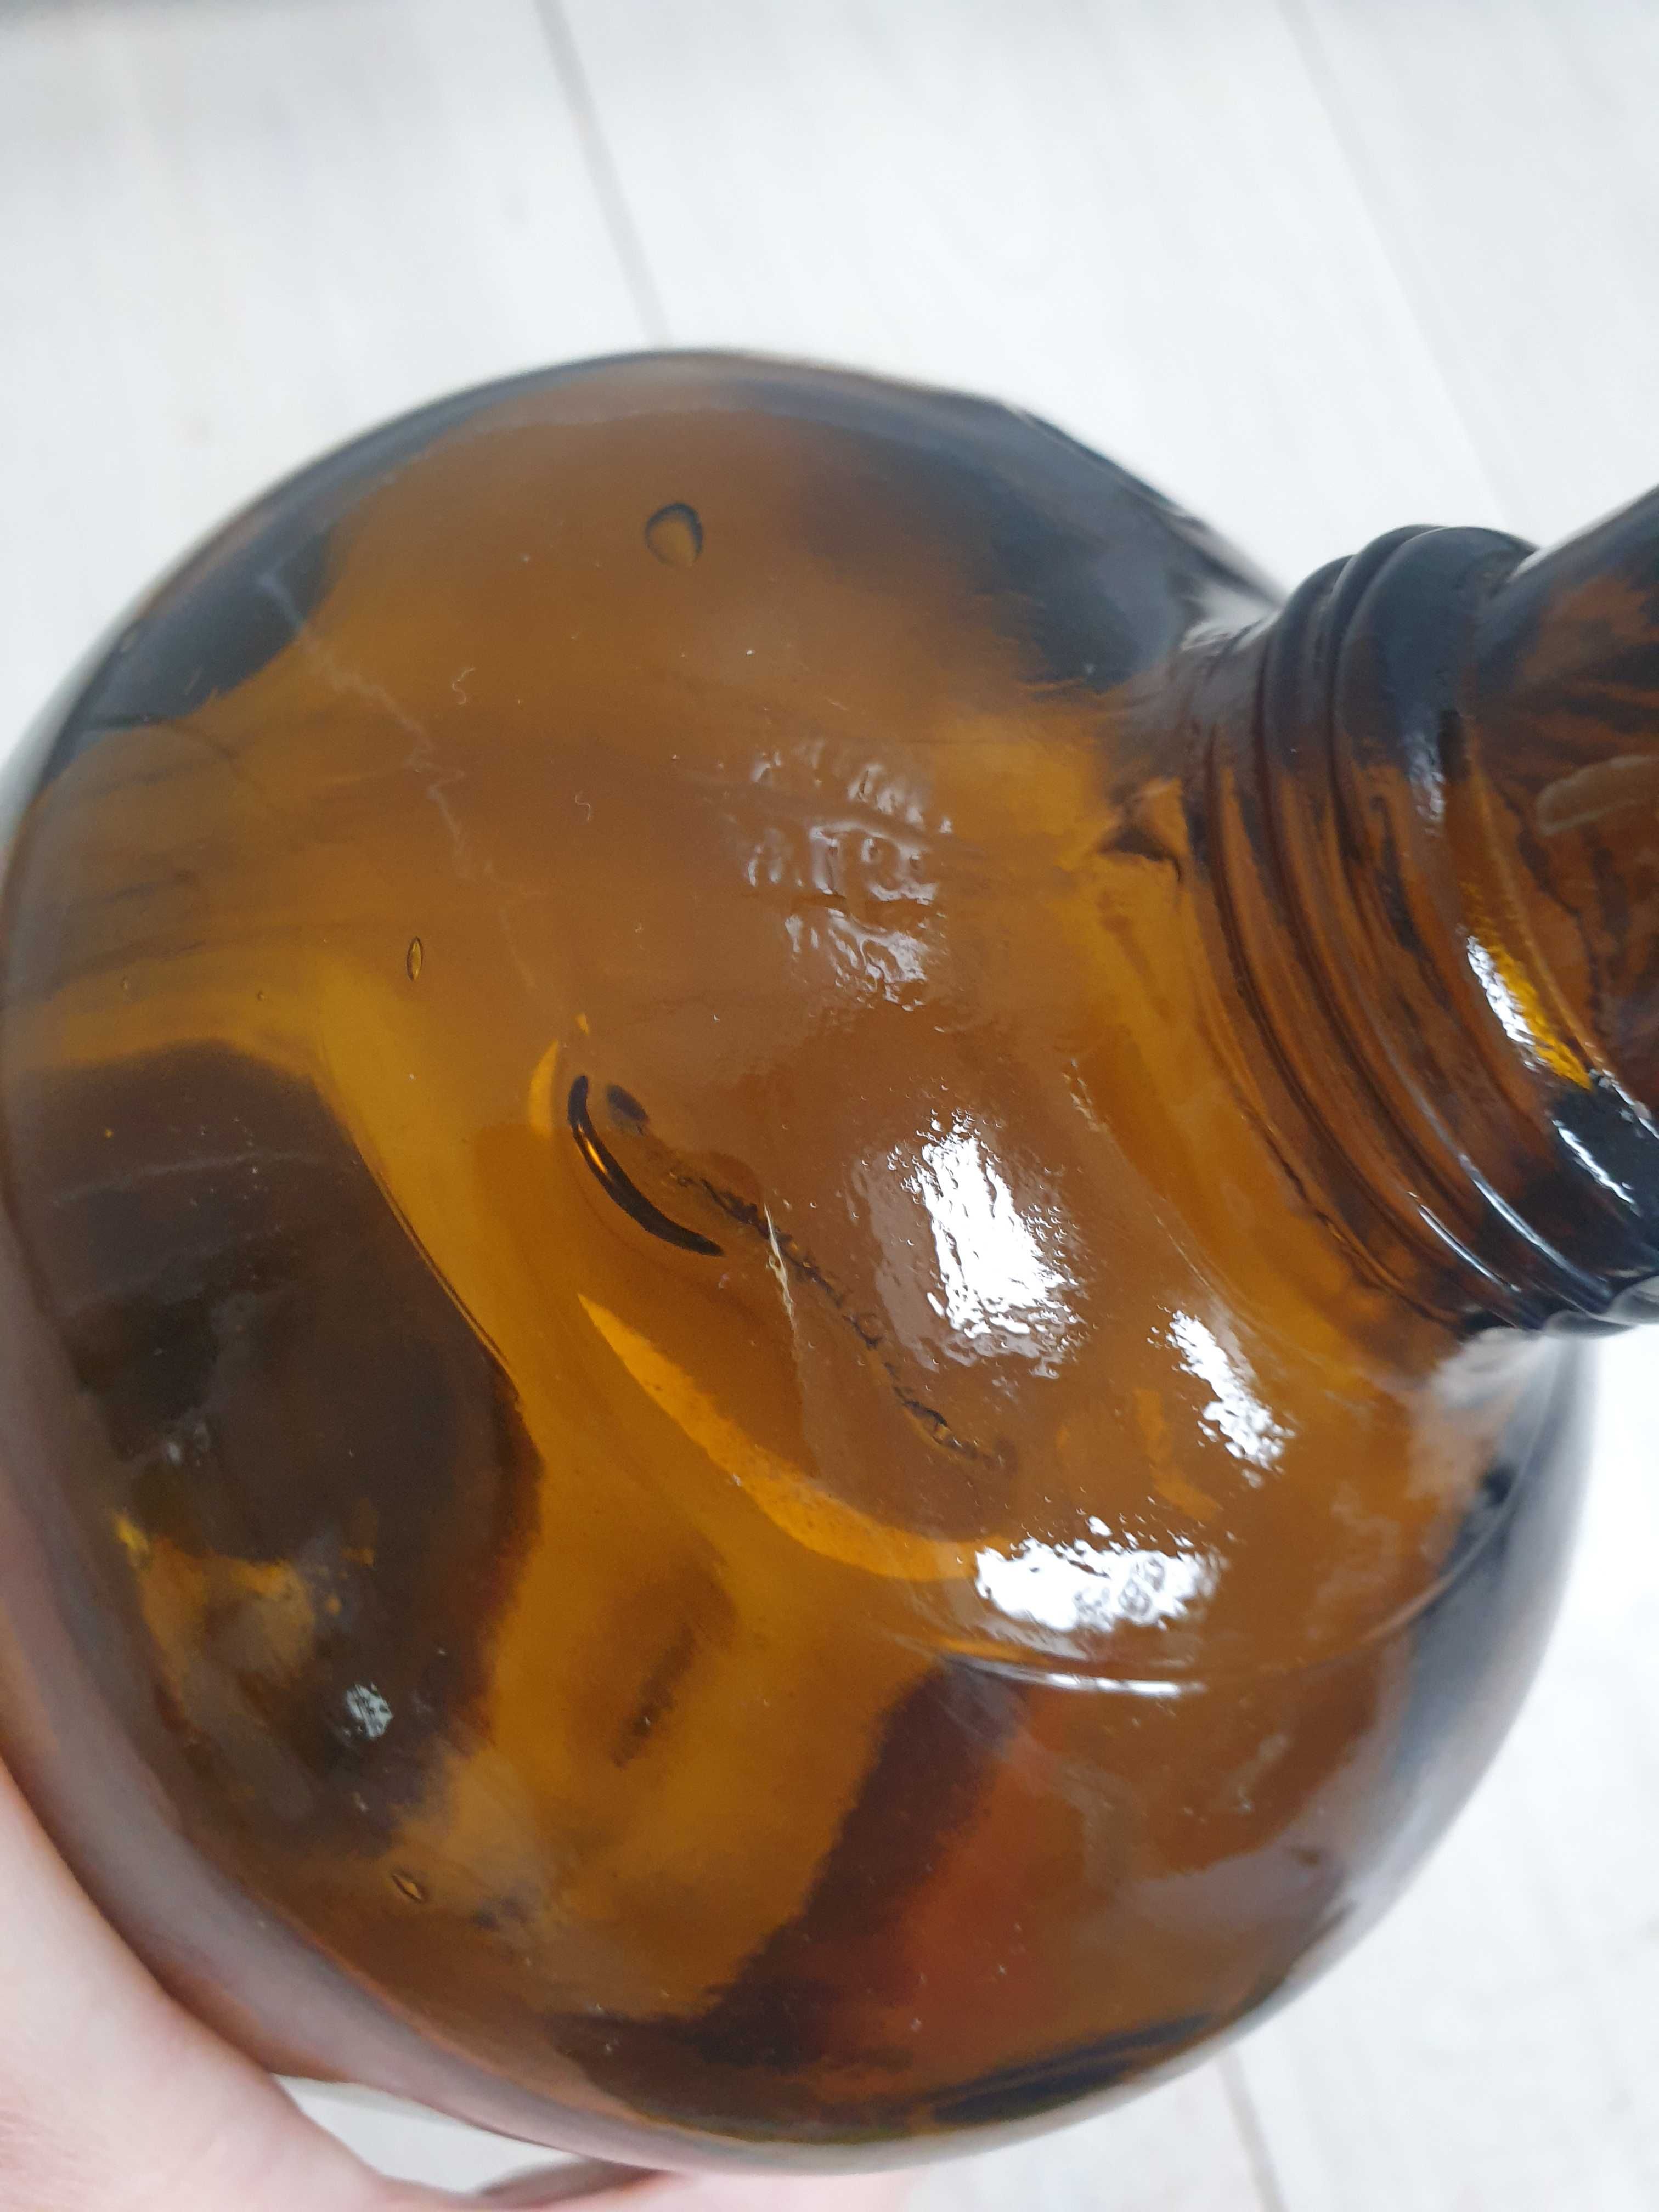 Stara duża butelka aptekarska apteczna z brązowego miodowego szkła